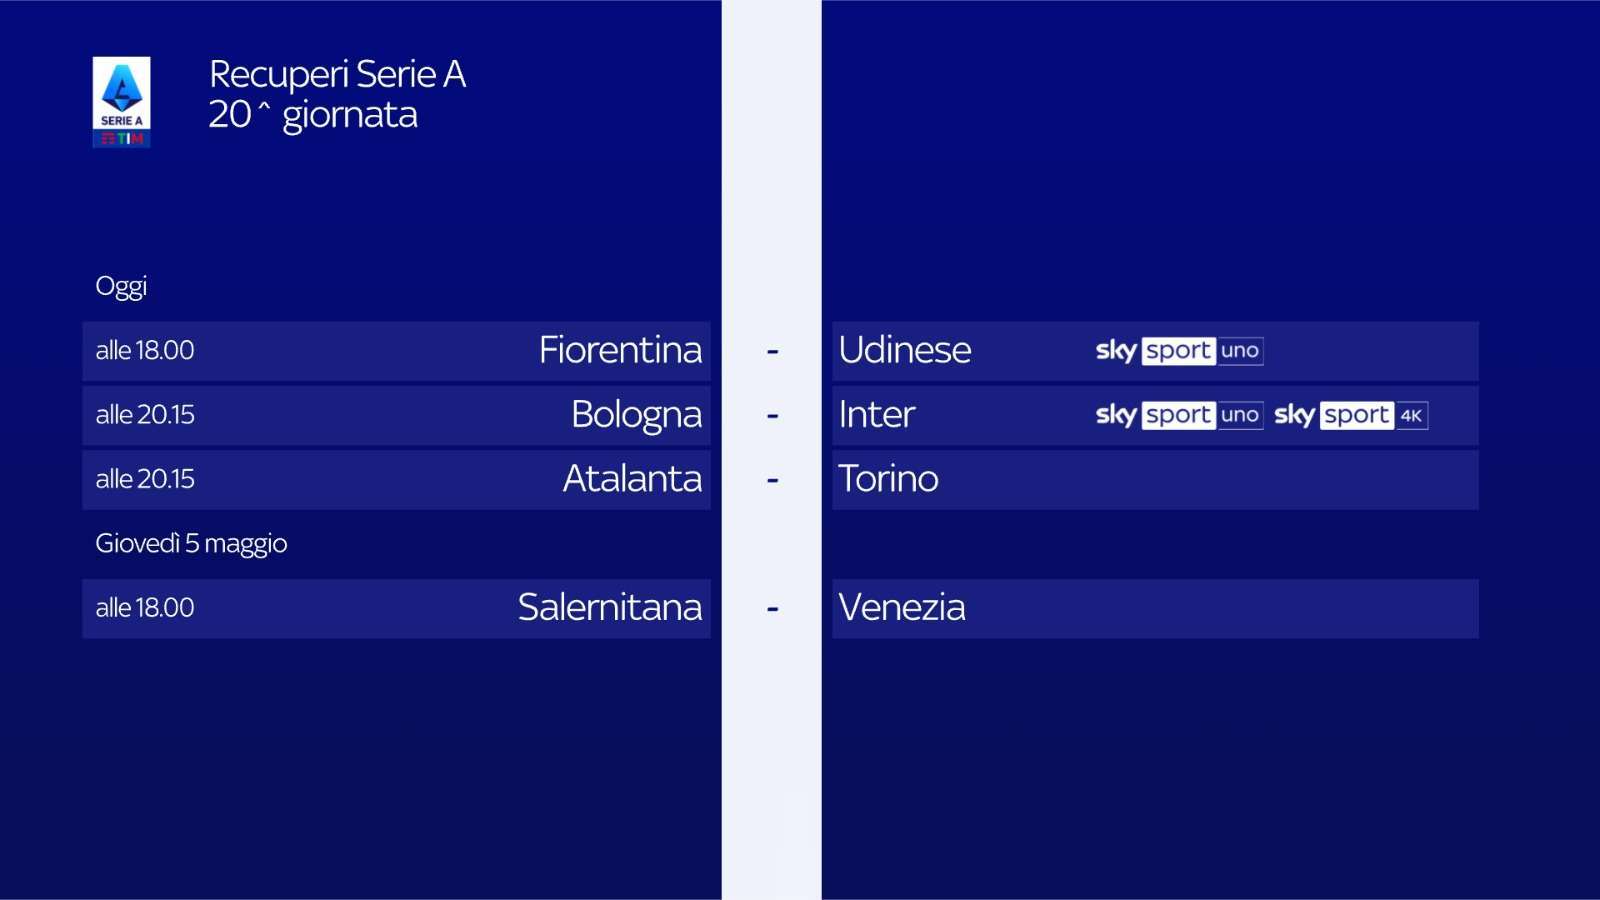 Sky Sport Serie A 2021/22 Recuperi 20a Giornata, Palinsesto Telecronisti NOW